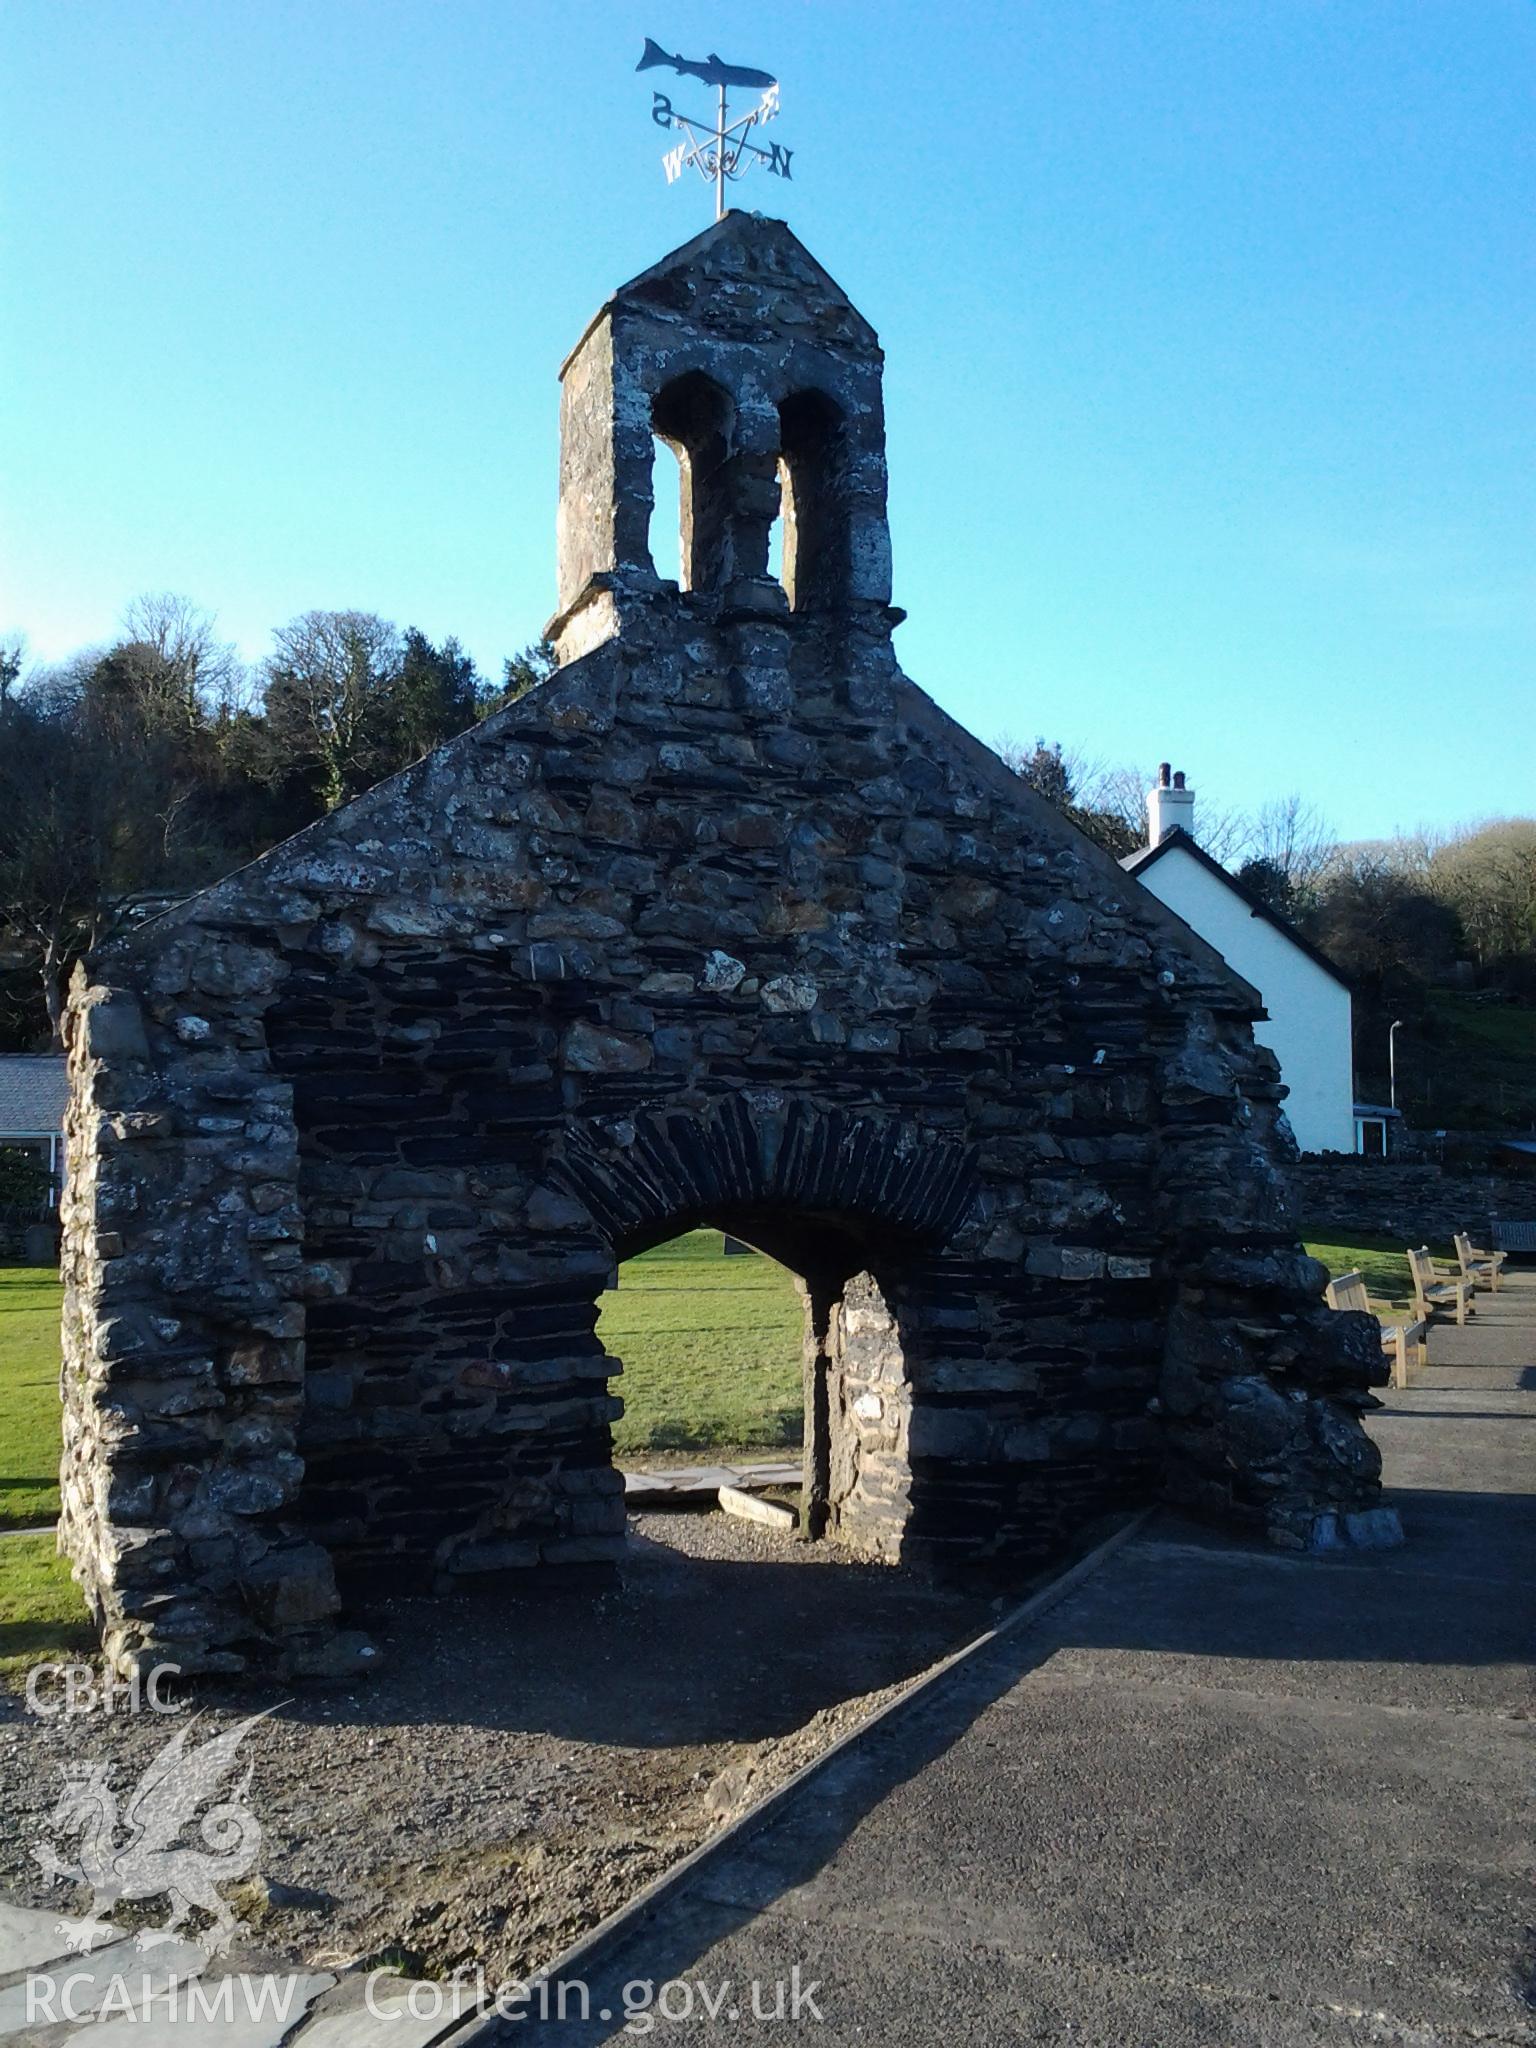 West wall of St Brynach's Church, Cwm-yr-eglwys, viewed from the south.